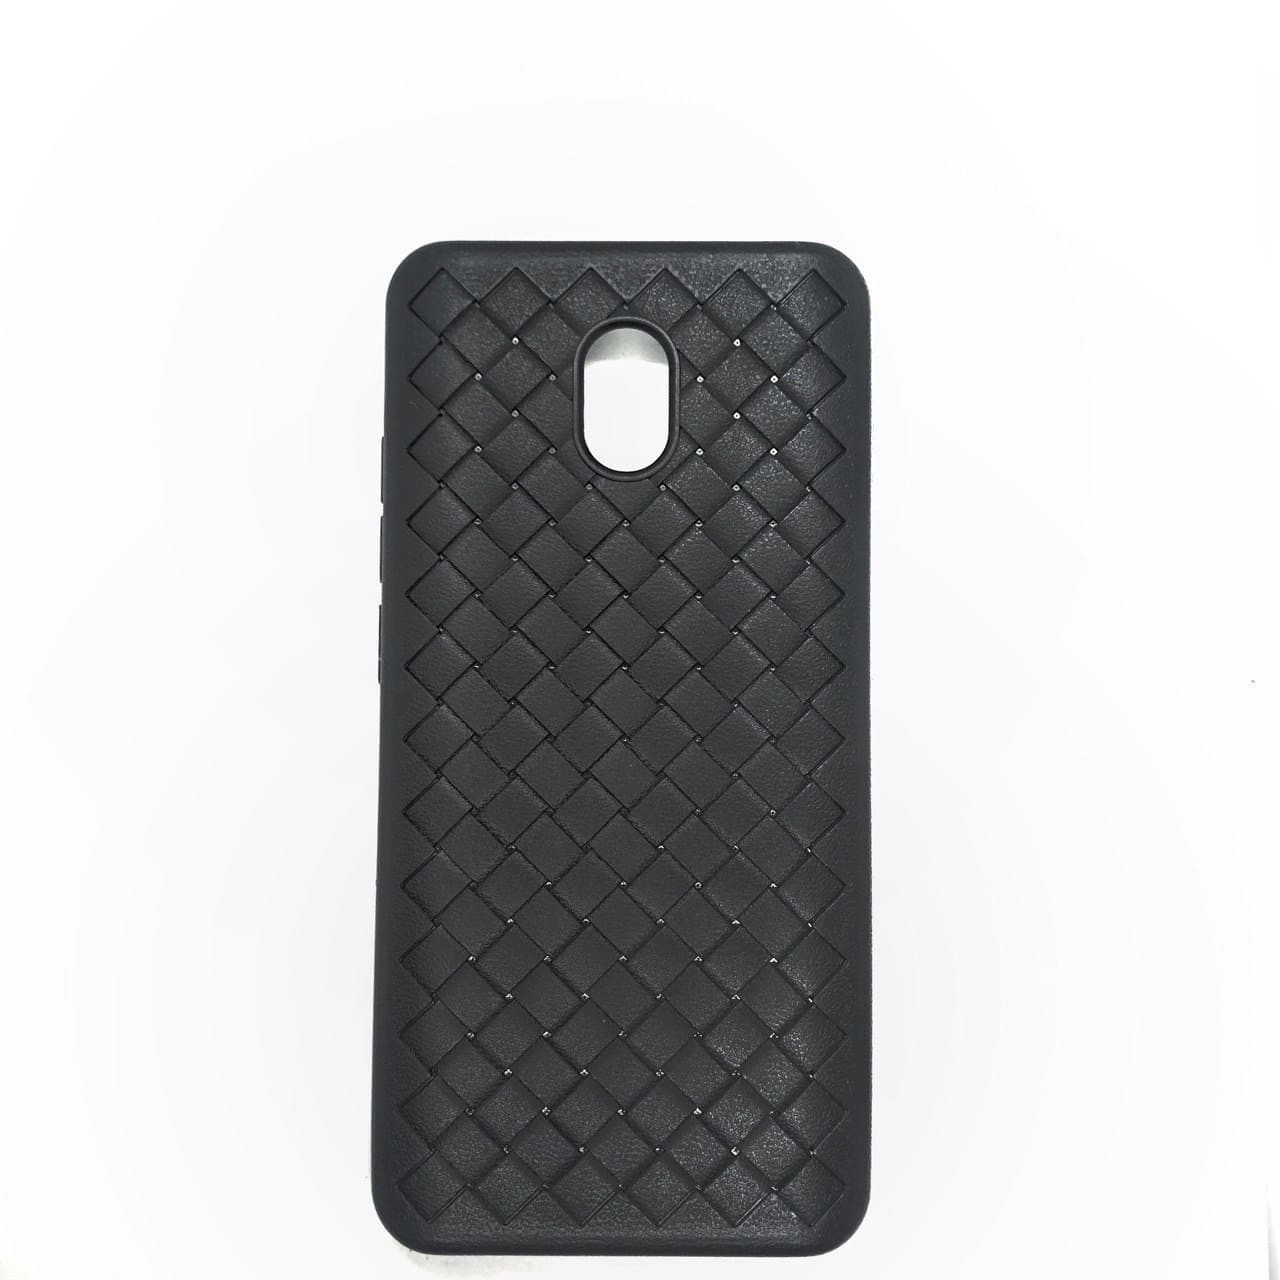 Cиликоновый (TPU) чехол Weaving Case  для  Xiaomi Redmi 8A – Черный